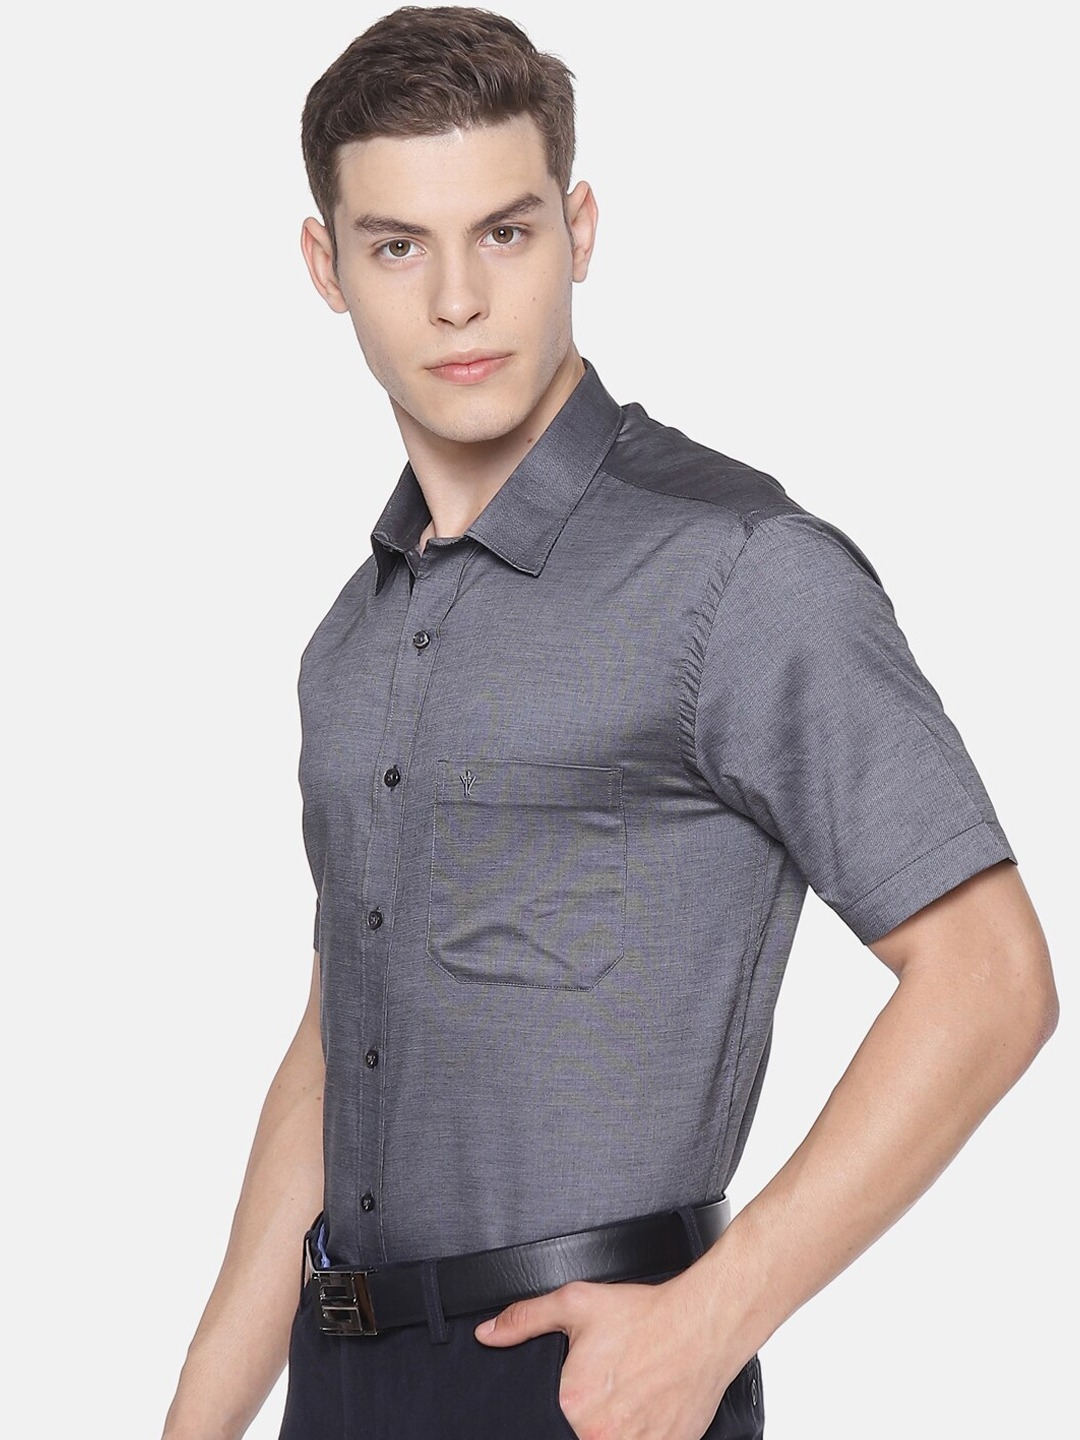 Ramraj Cotton | RAMRAJ COTTON Men Grey Smart Slim Fit Solid Formal Shirt 2